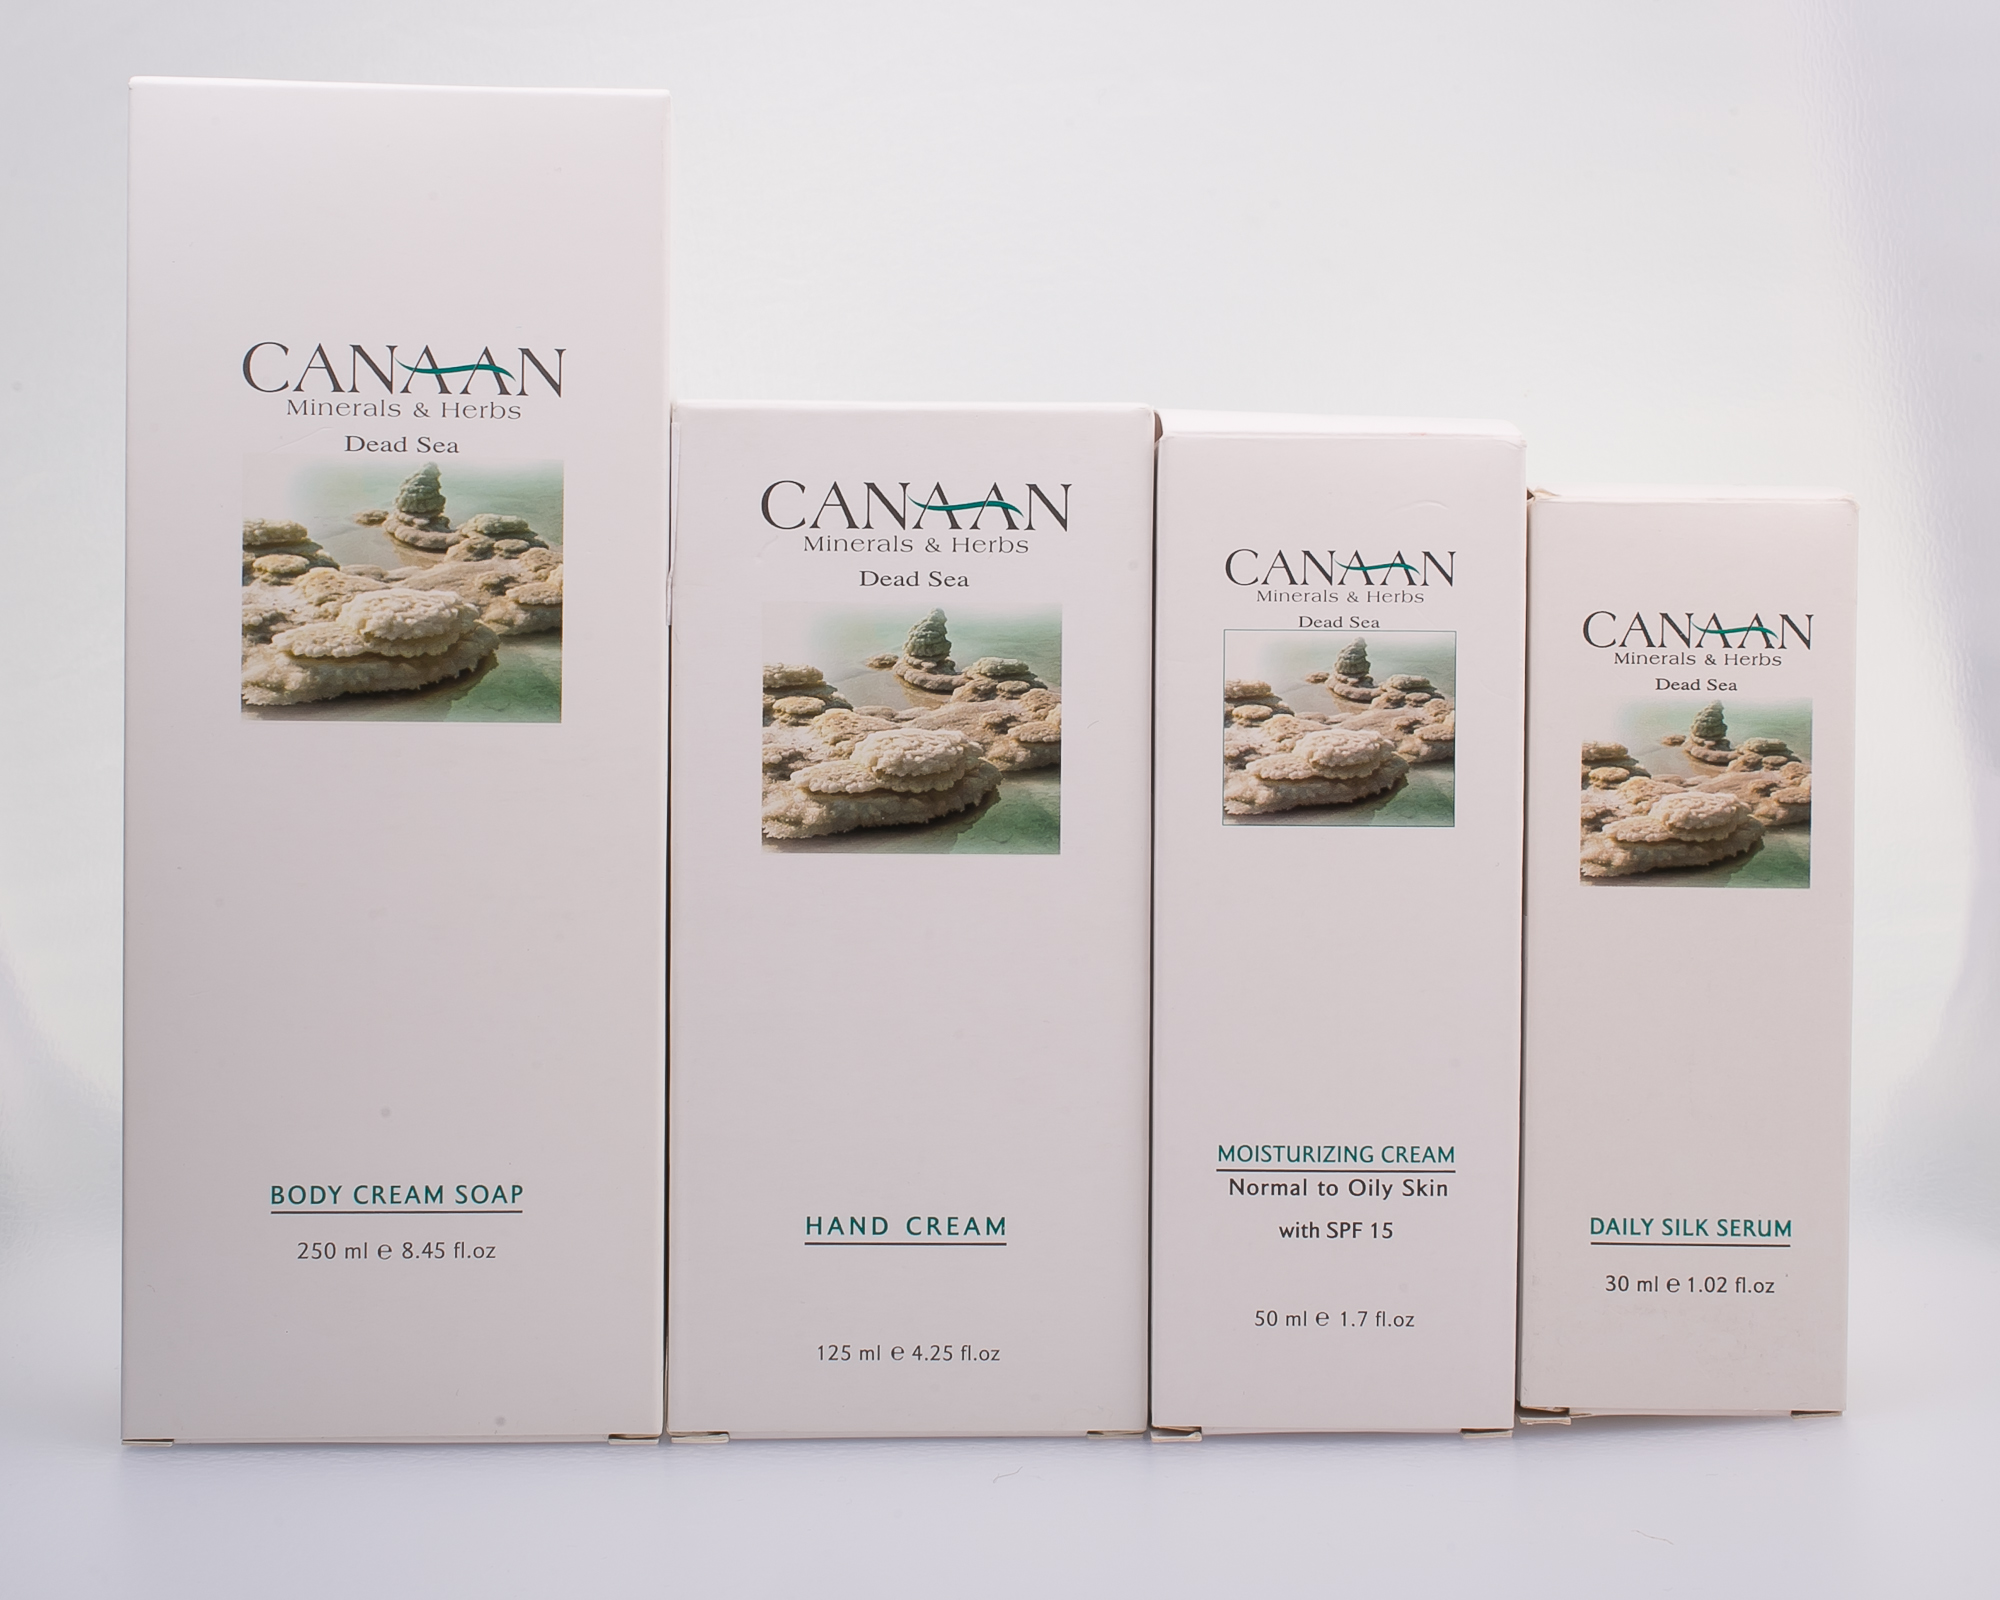 Canaan / Омолаживающий крем для рук с минералами Мертвого моря, маслом Авокадо и Витаминами С и Е, 125мл   